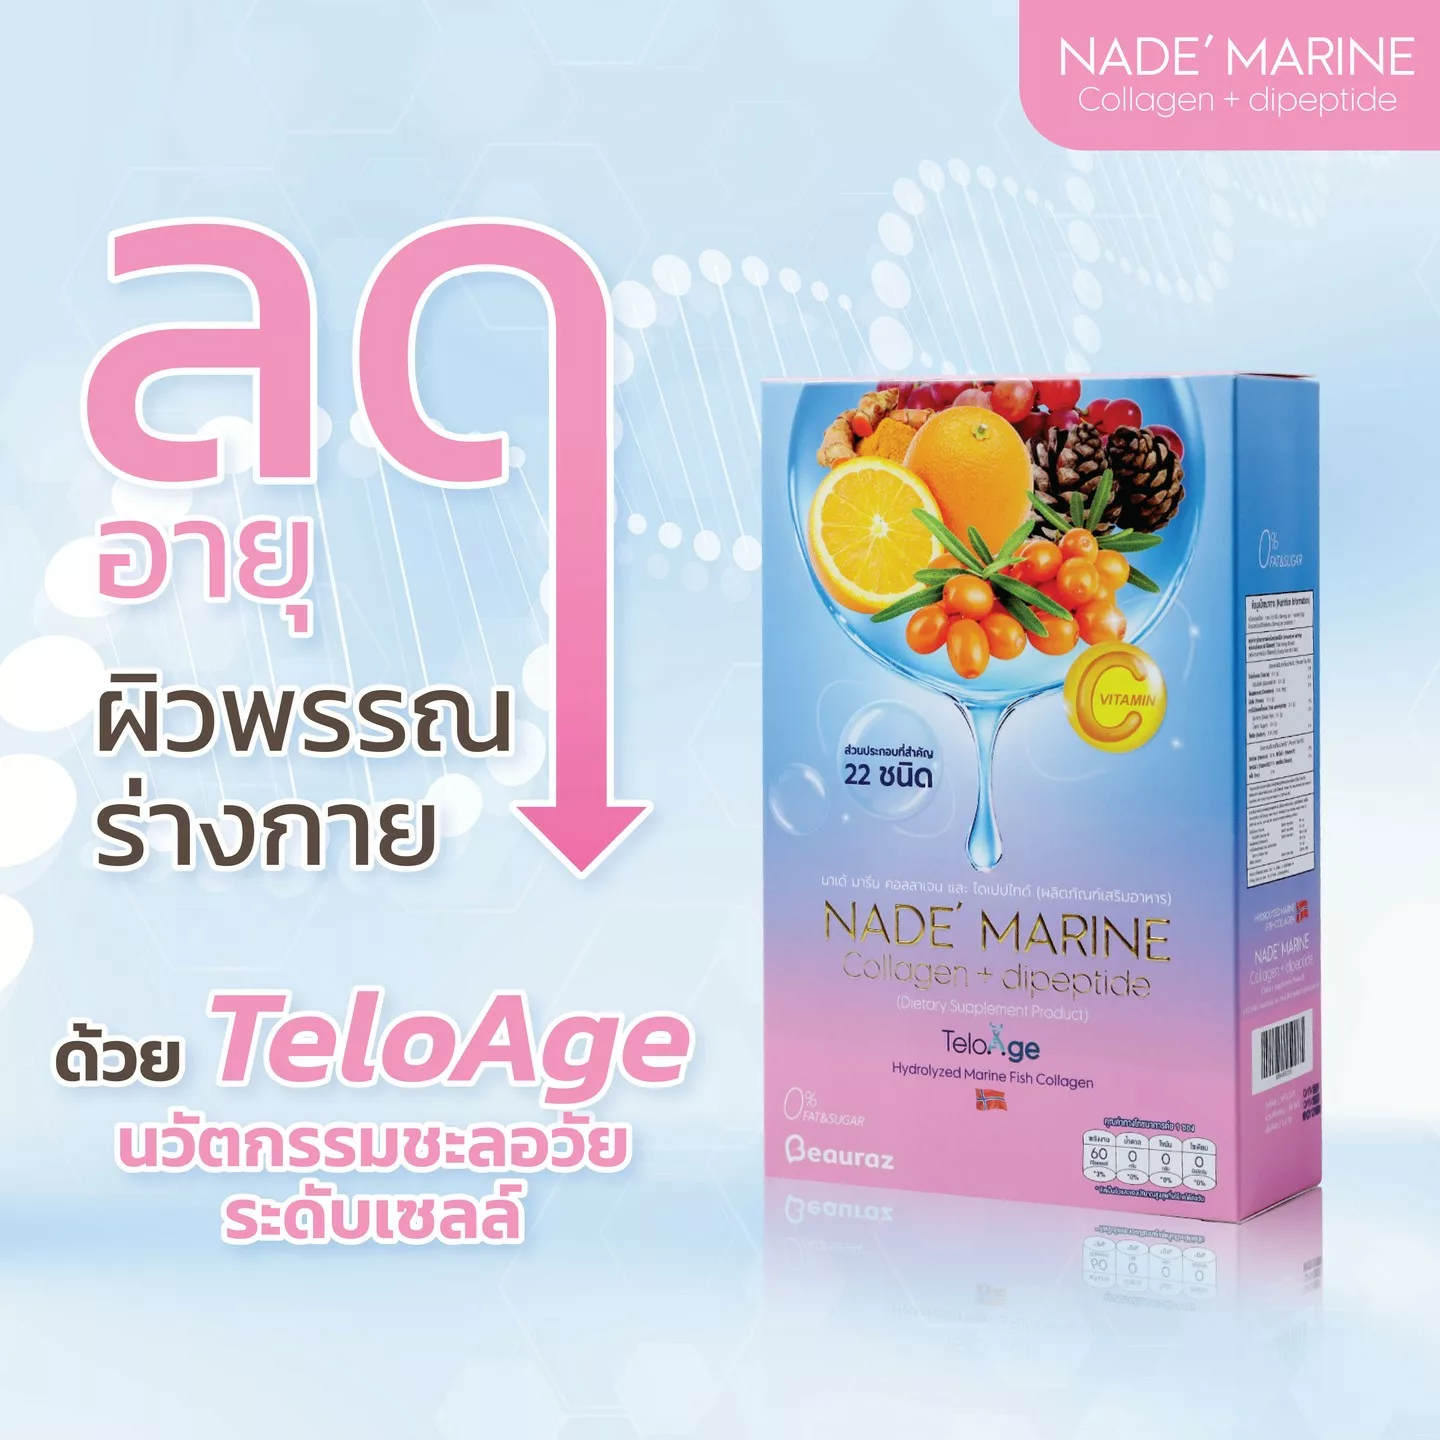 NADE'Marine Collagen (powder) Boost skin, hair ,nail, bone, joint, teeth